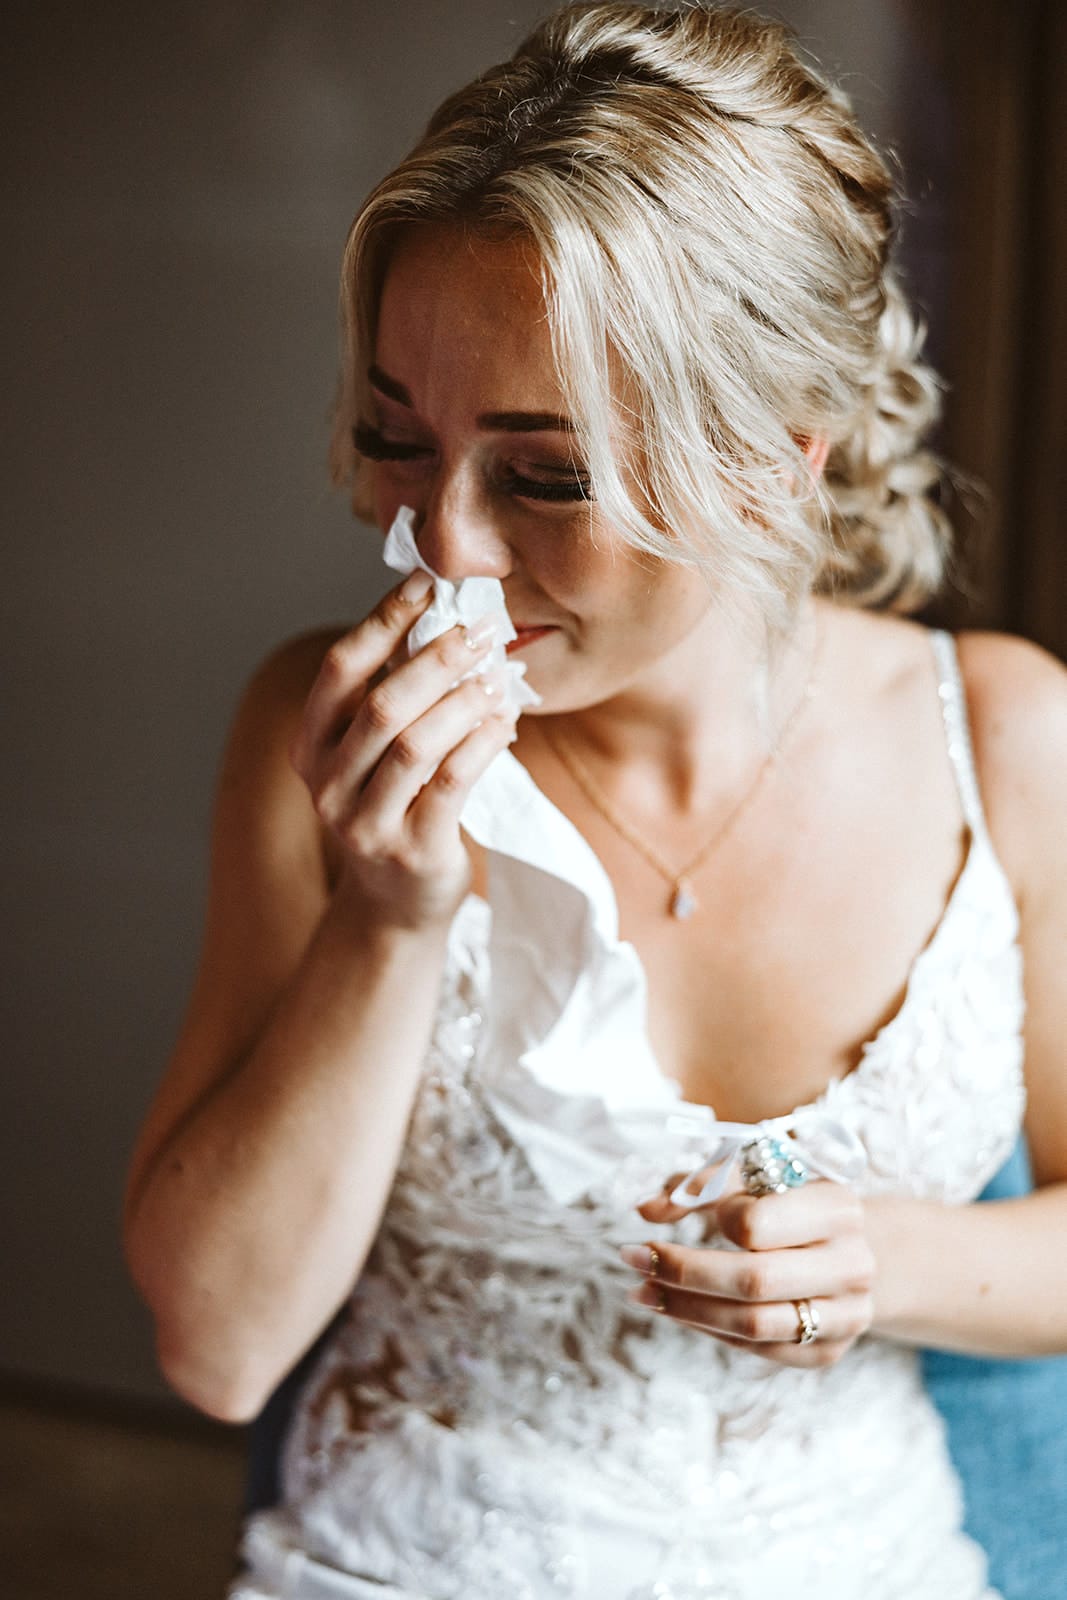 Die Farm Essen die Straußenfarm Essen Hochzeitsfotograf - Braut weint vor Glück nach dem Lesen des Ehegelübdes des Mannes Bräutigams